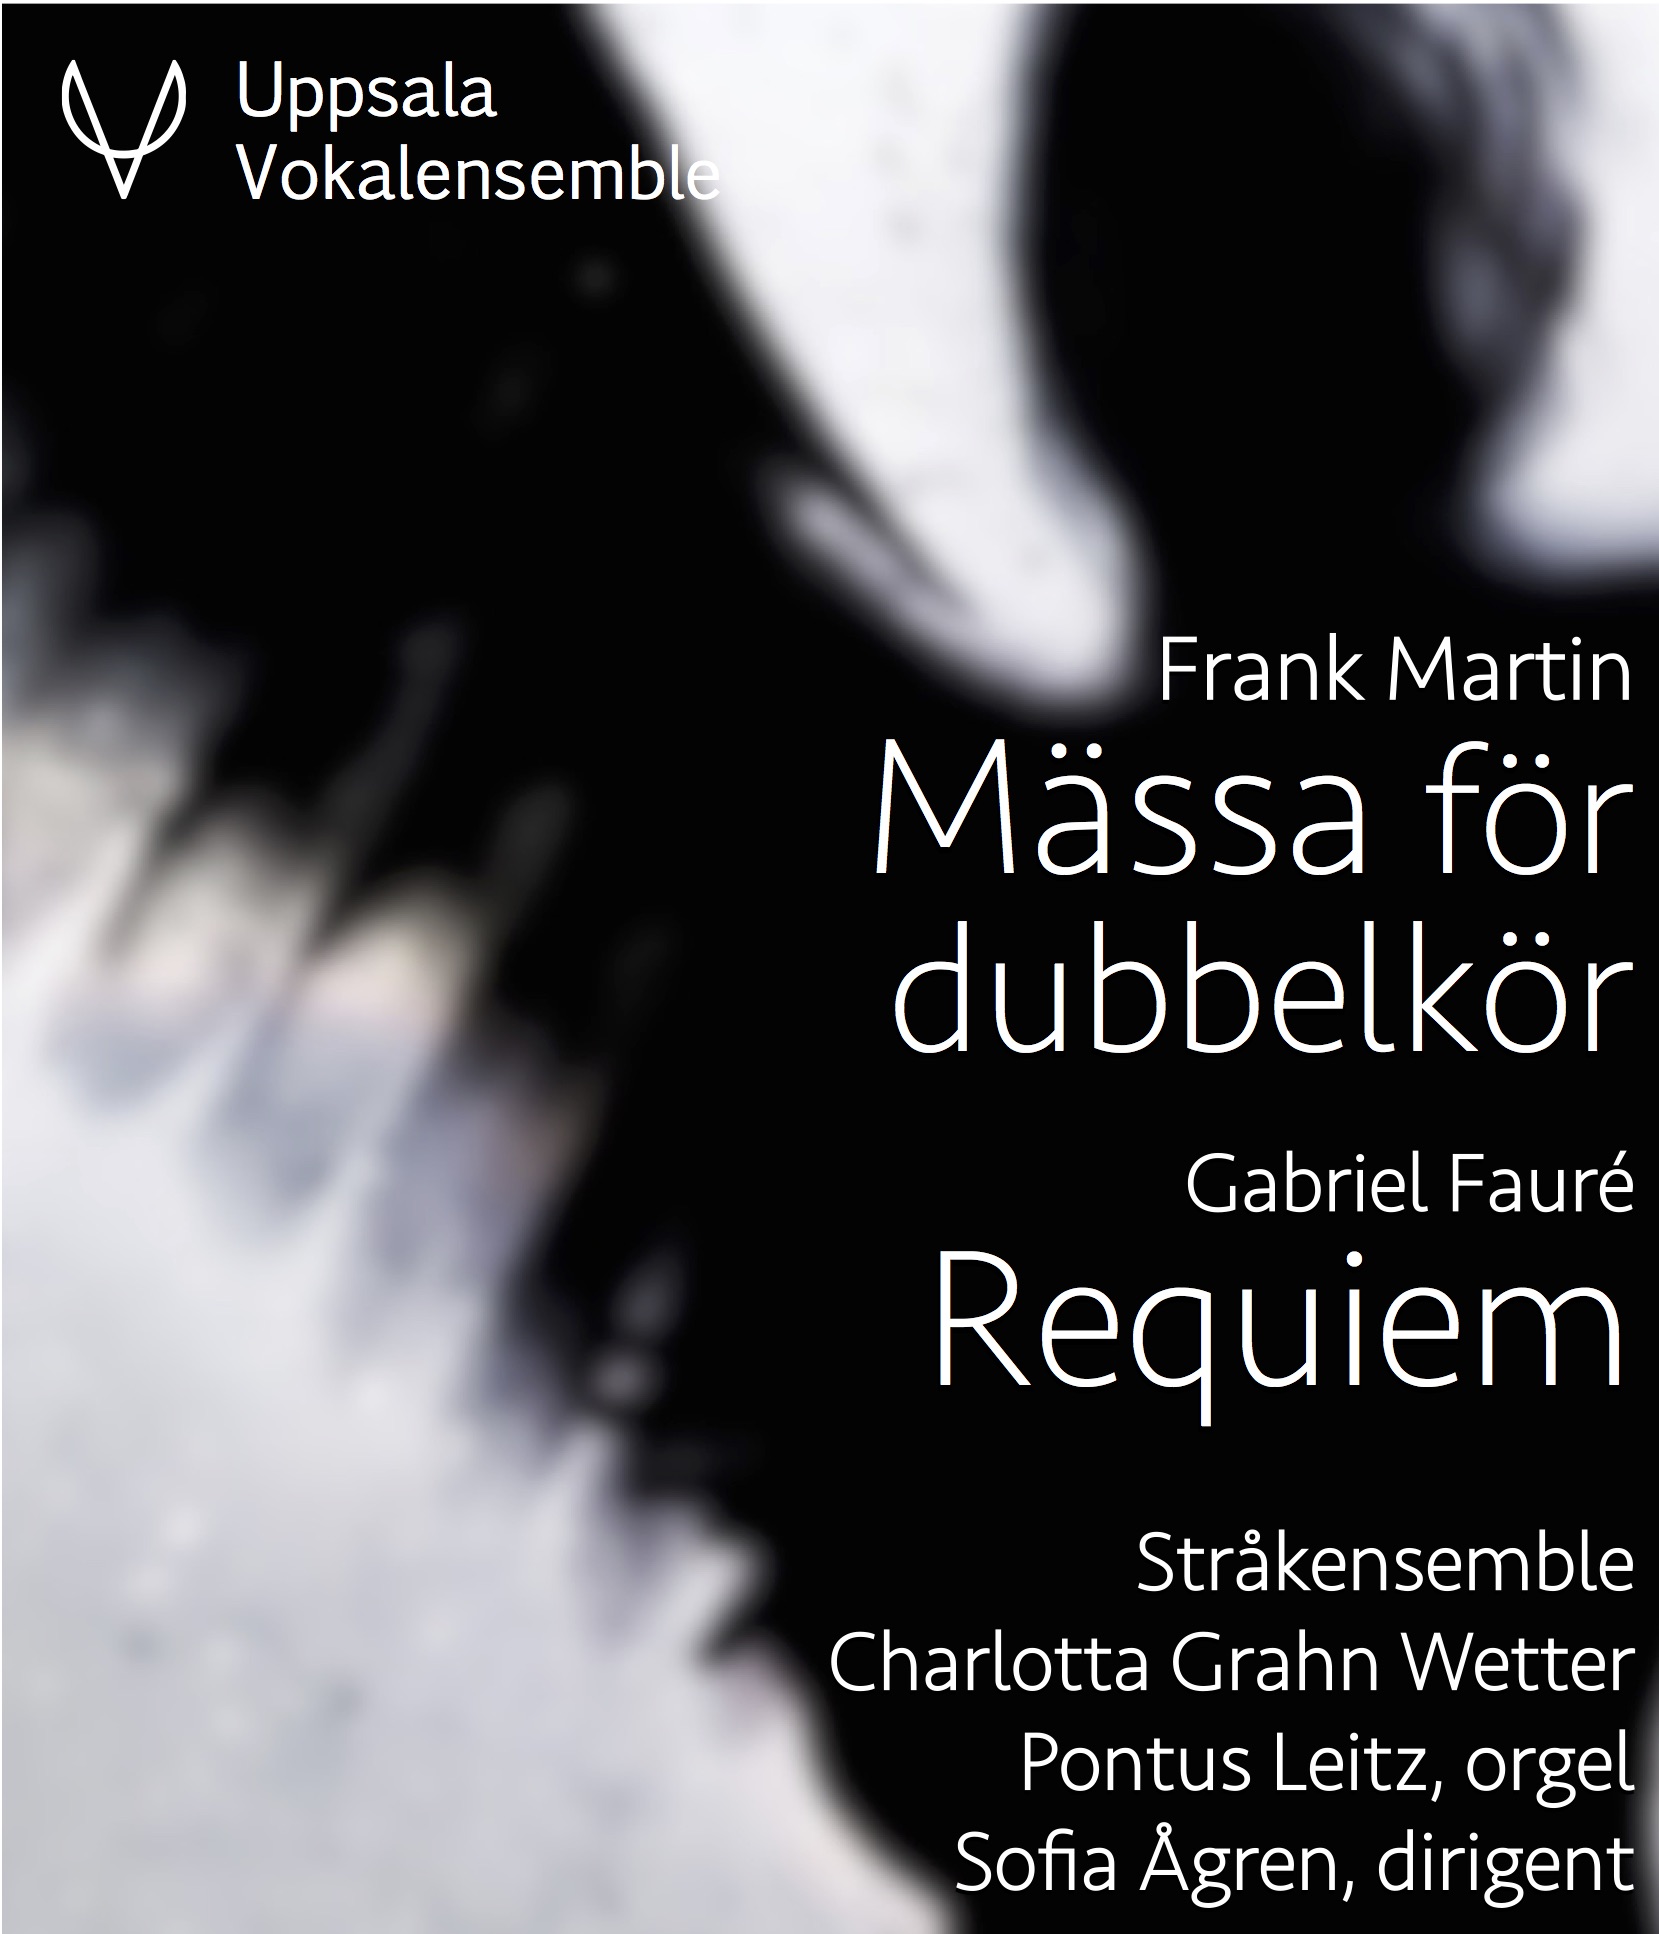 Martins Mässa och Faurés Requiem